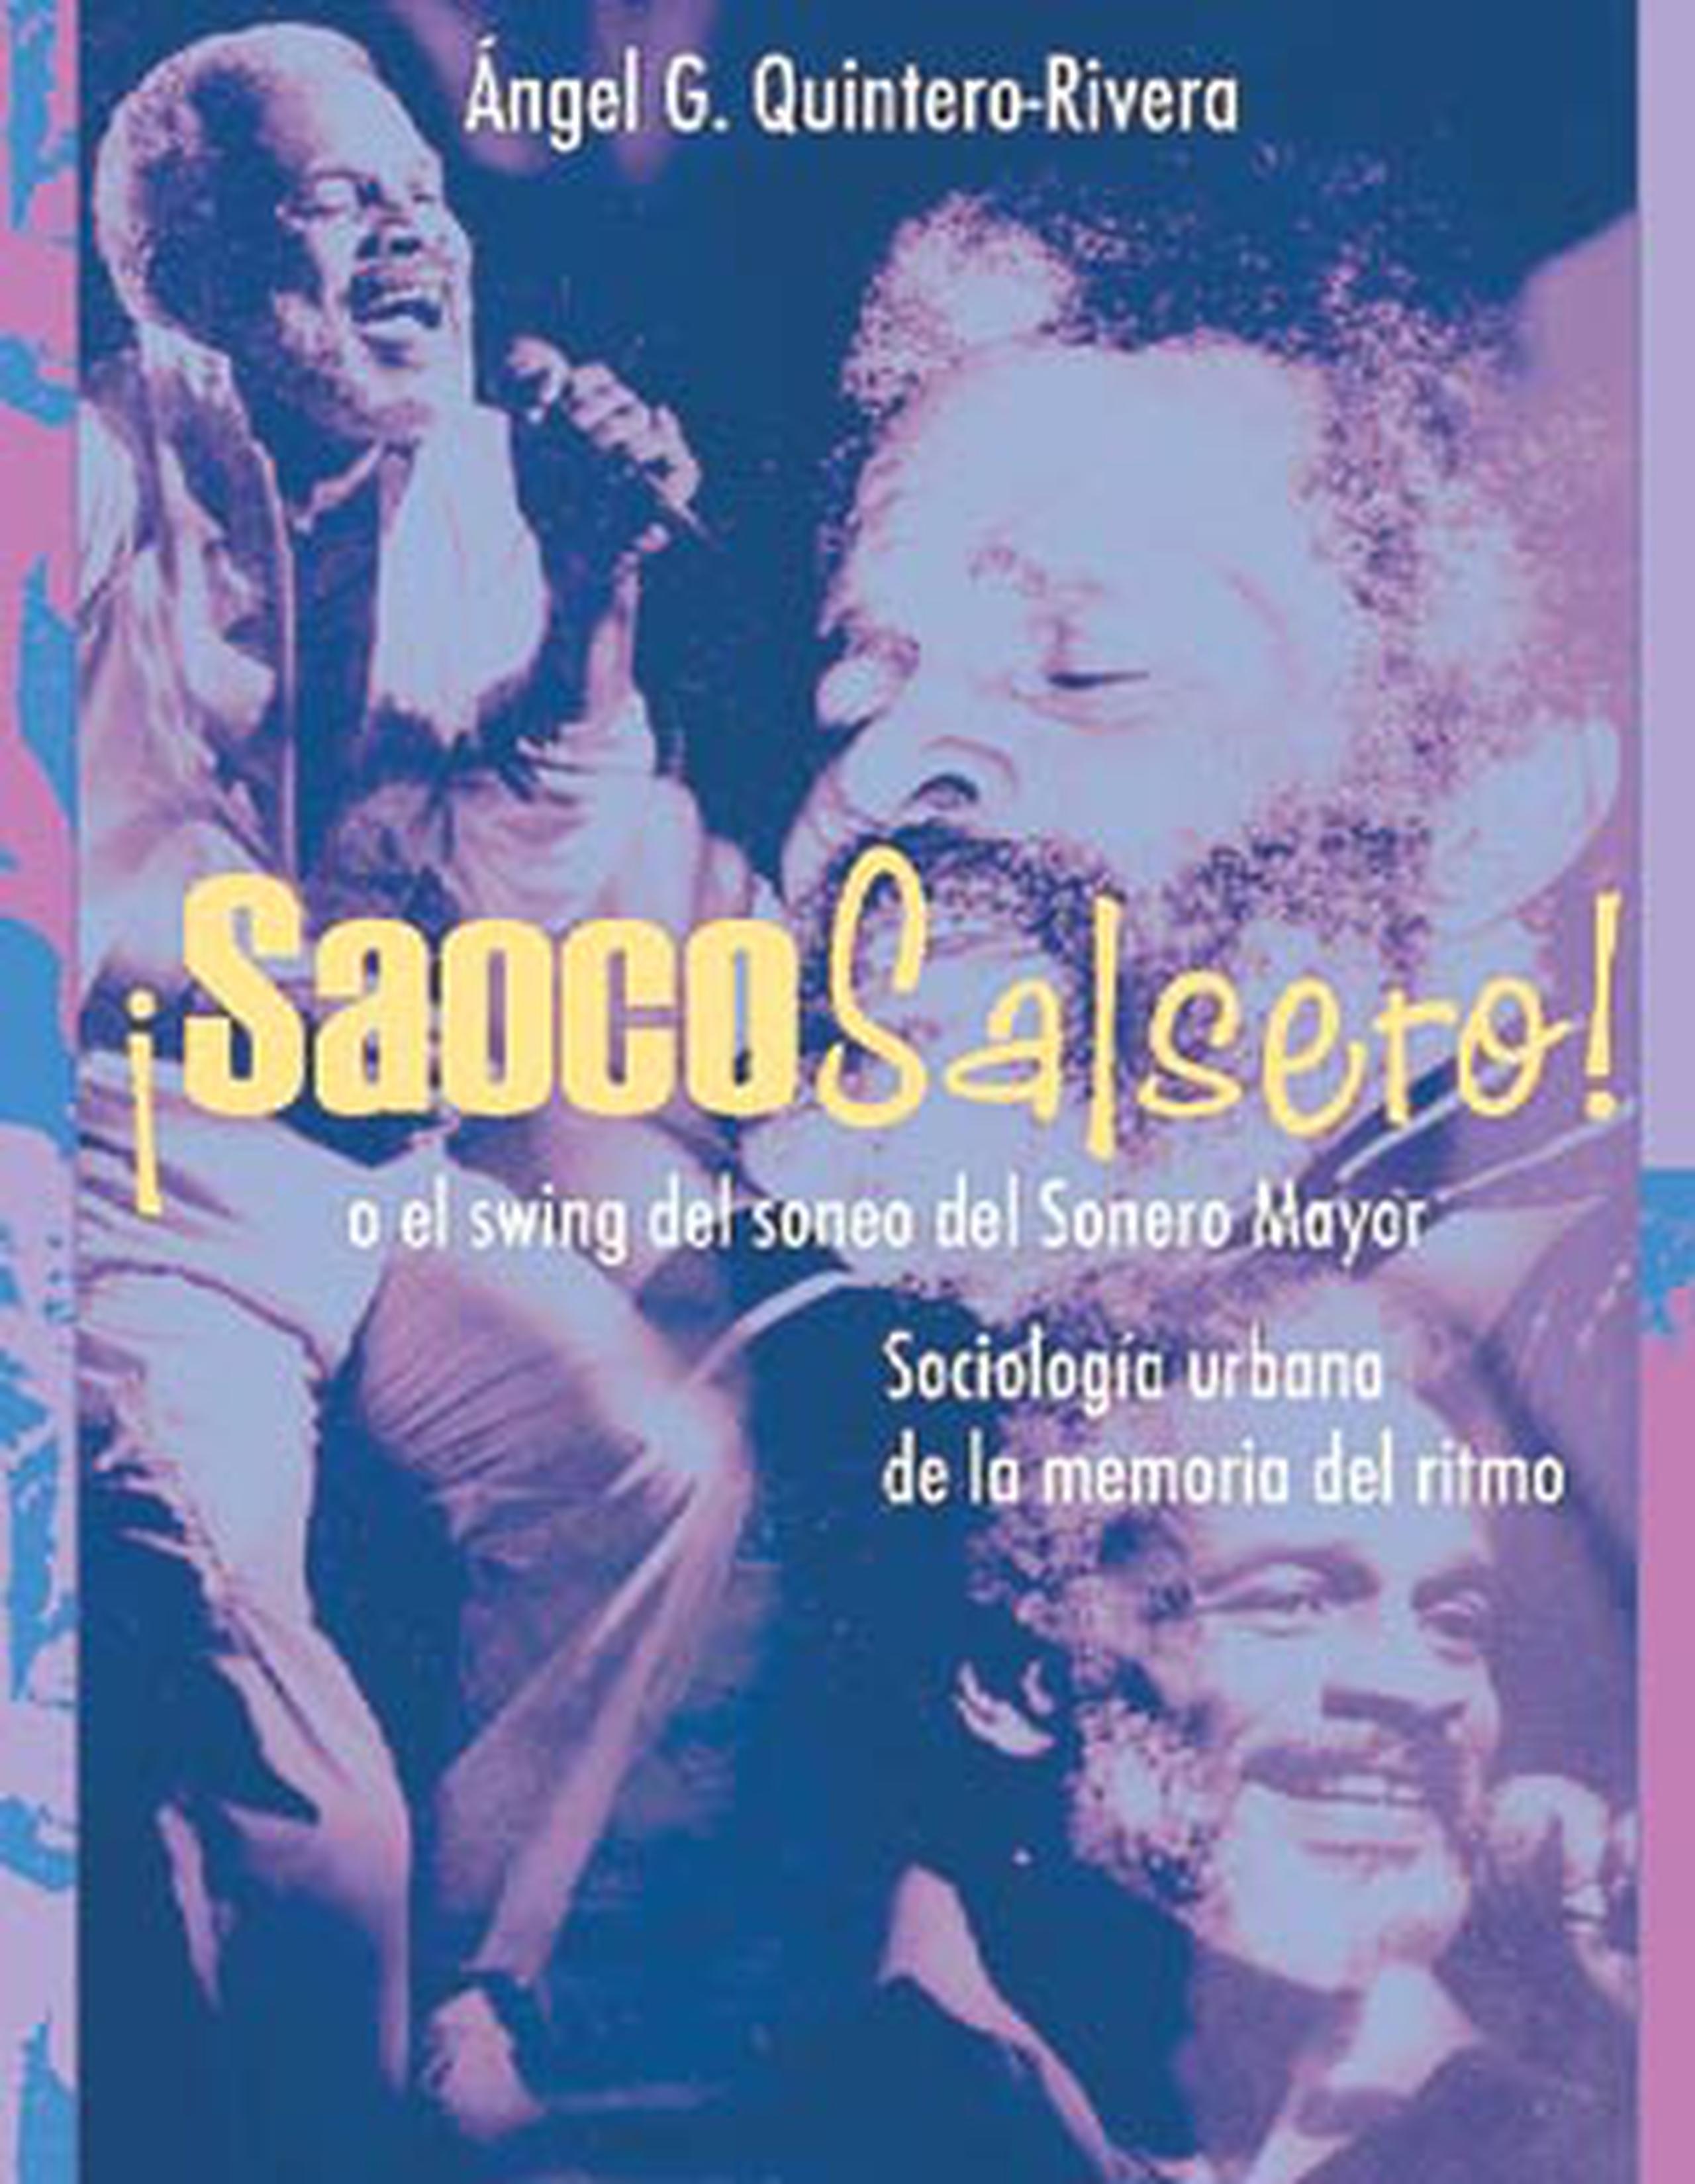 El sociólogo e investigador Angel "Chuco" Quintero es el autor del libro “Saoco salsero, el swing del sonero mayor, sociología urbana de la memoria del ritmo en Puerto Rico”.